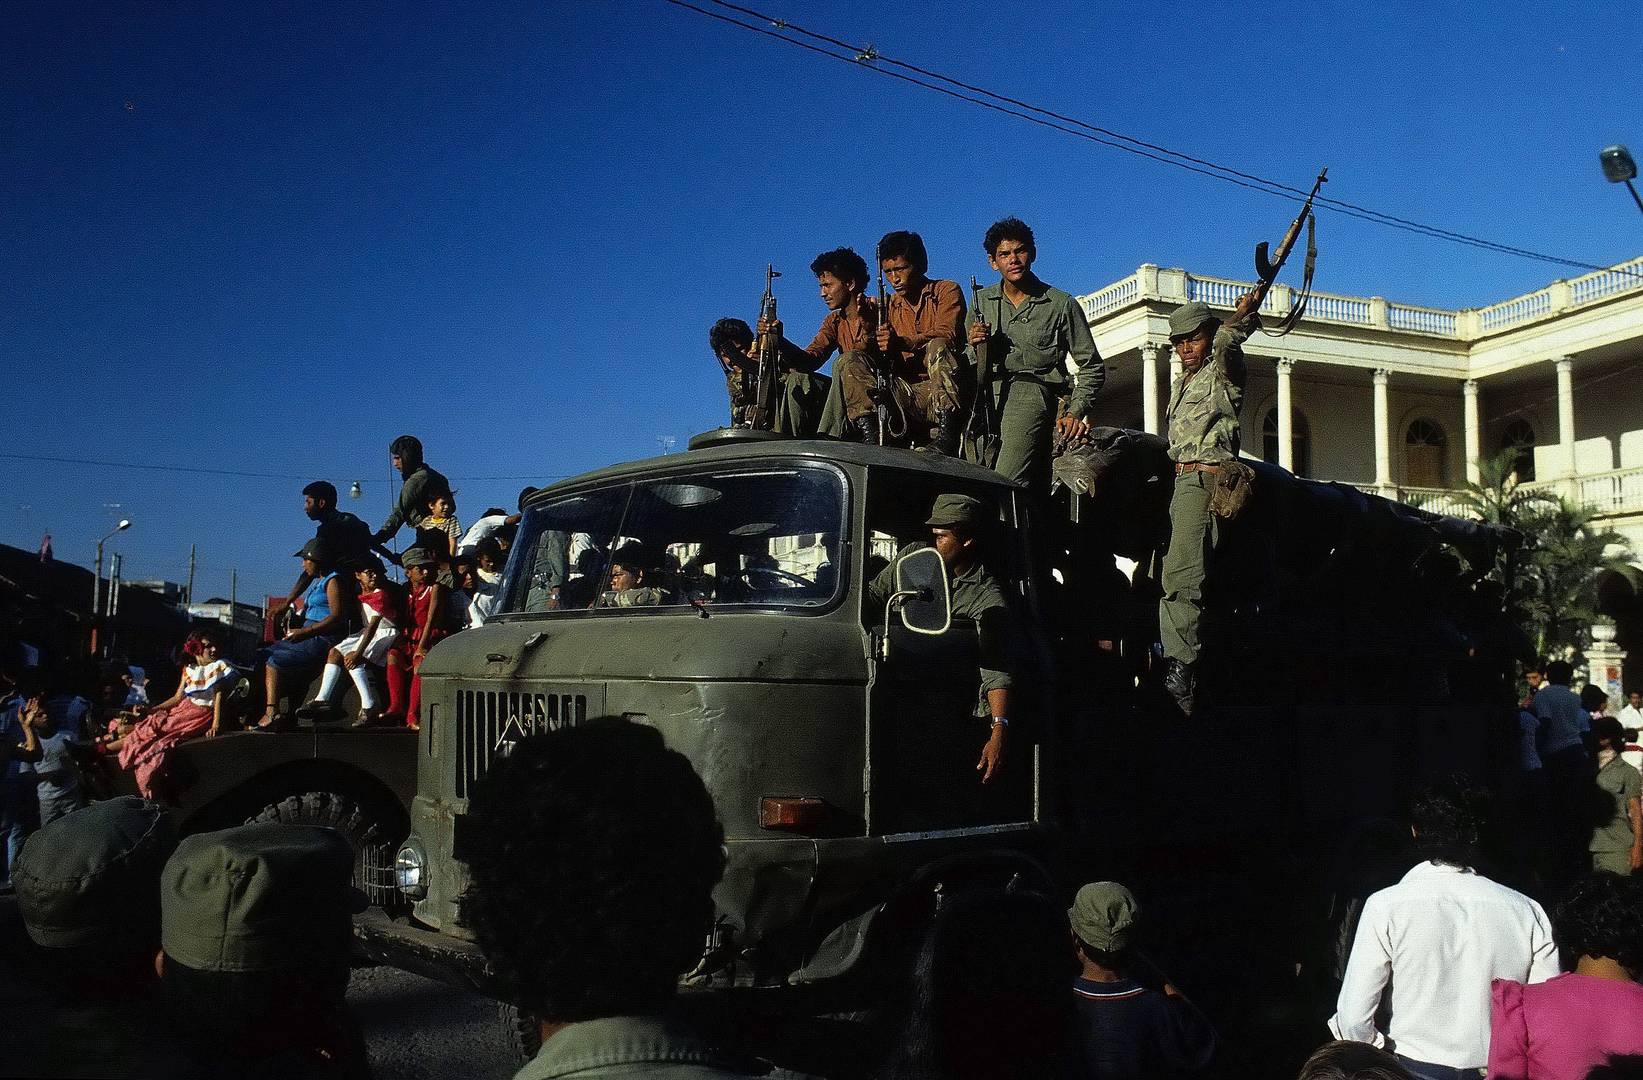 1984 - Nicaragua im Aufbruch